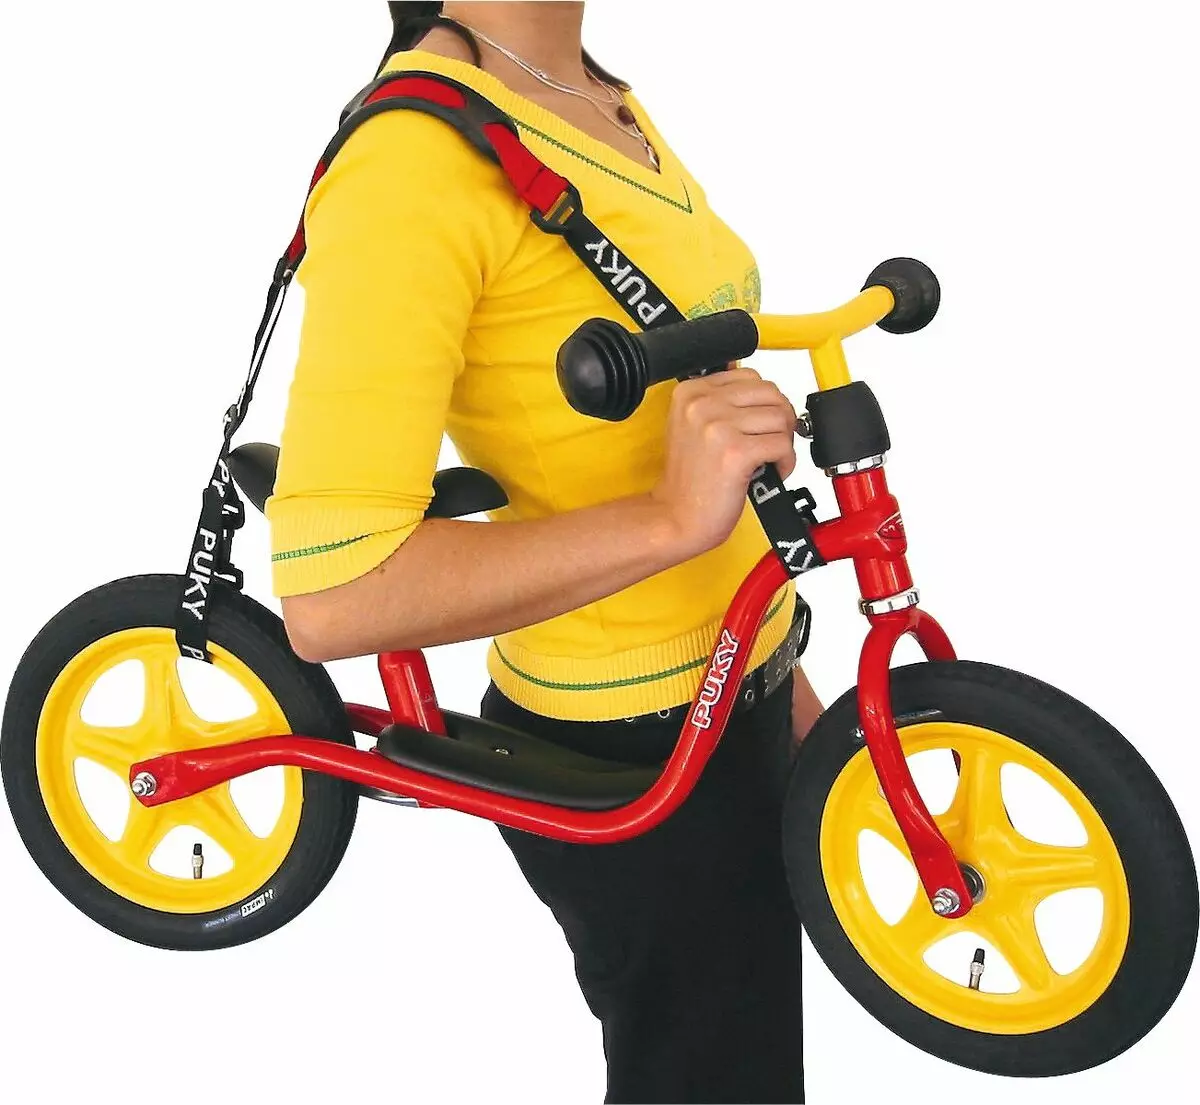 אופניים פואקי: תלת אופני ילדים וחתול, שני מודלים ארבעה גלגלים וארבע גלגלים 16-18 ו -20 אינץ '. אפשרויות אחרות 20370_27